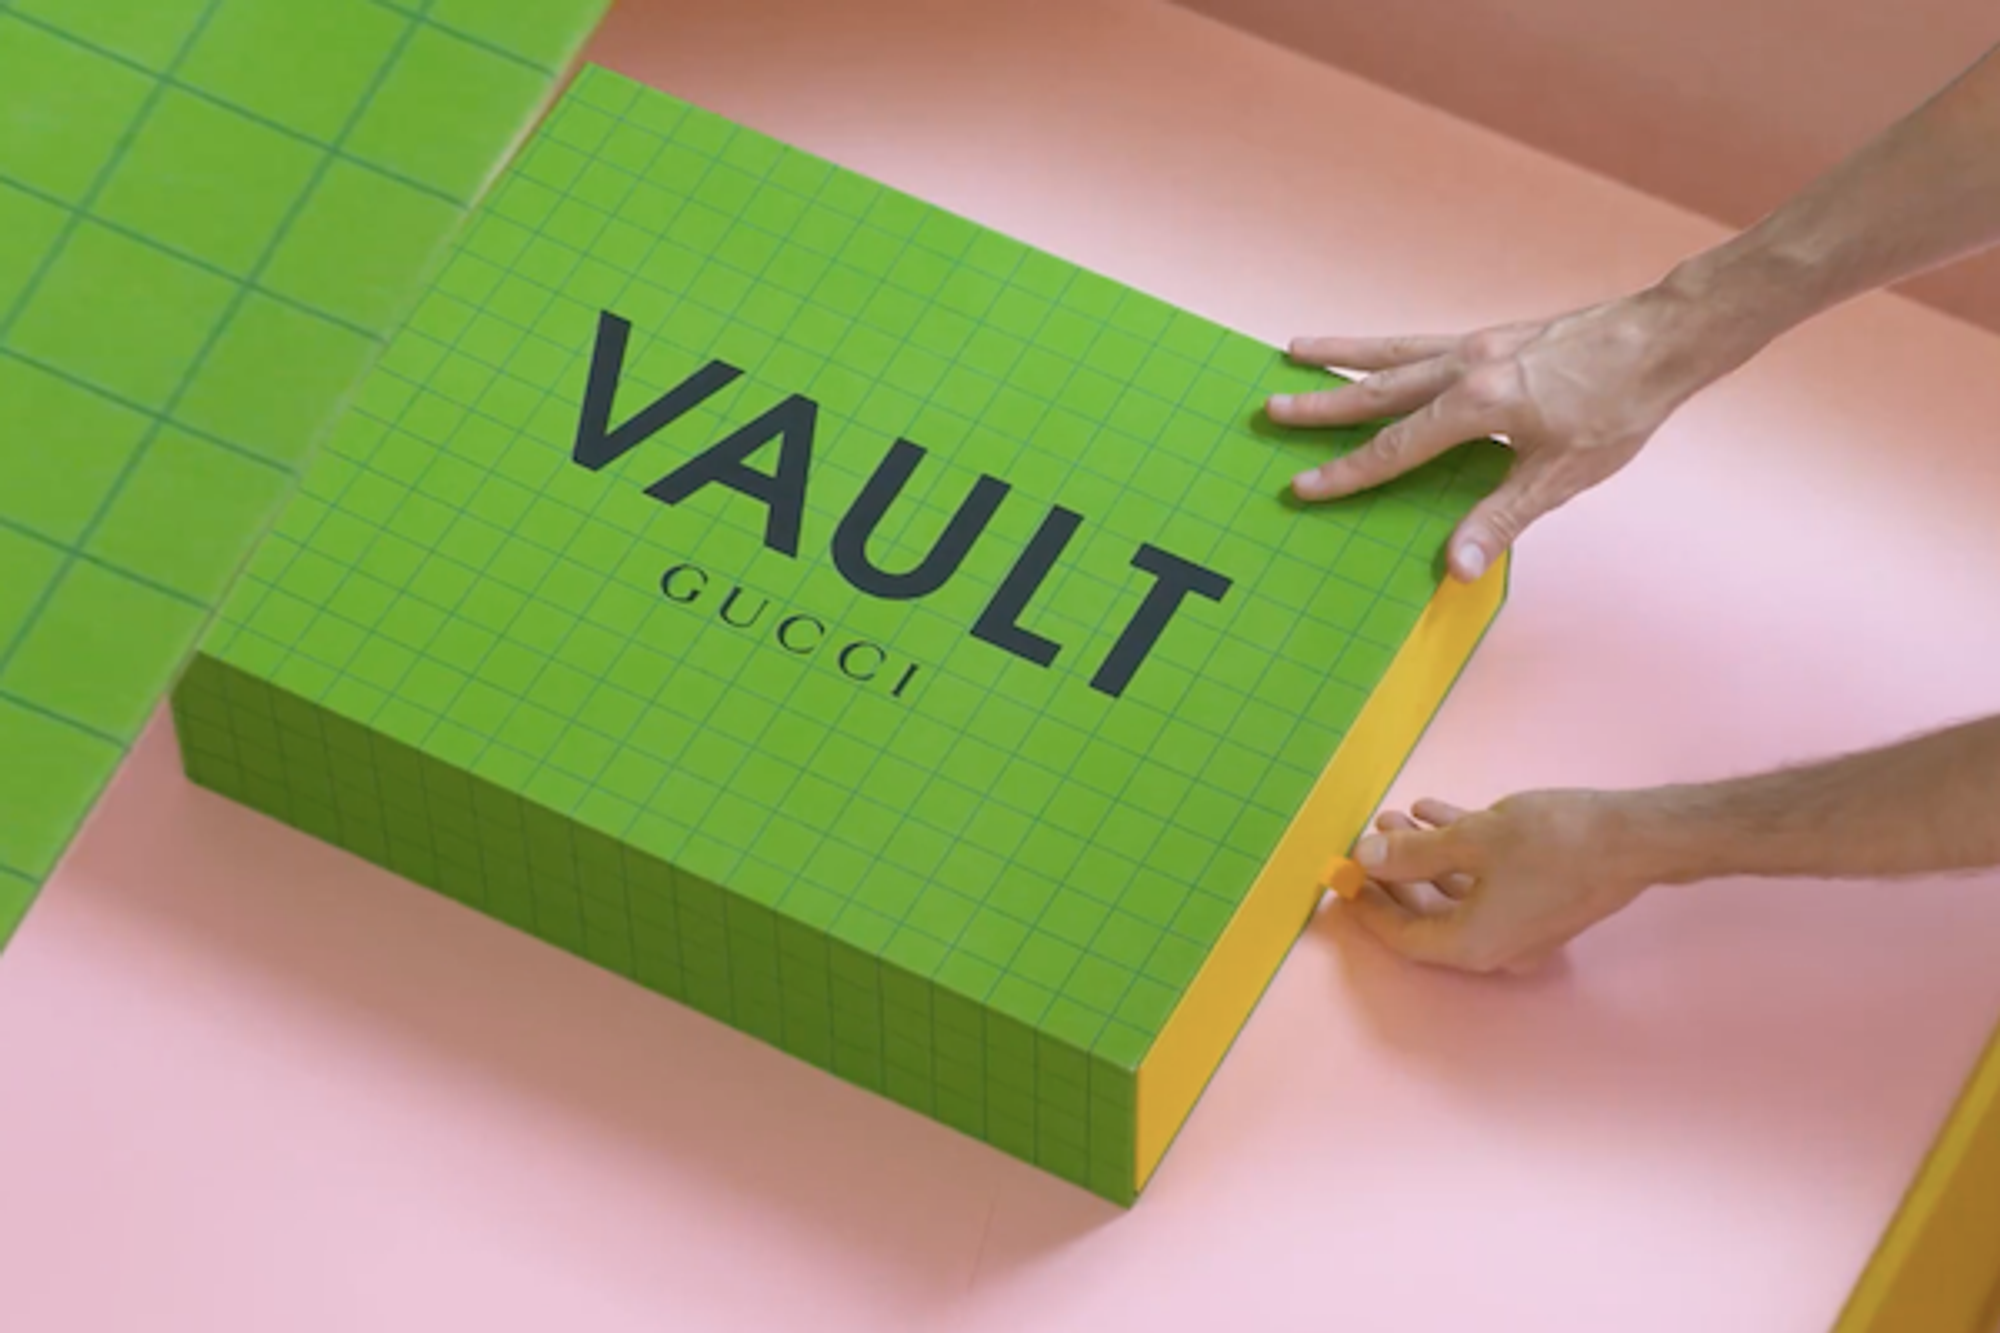 Gucci Opens ‘Vault’, A Concept Store In Metaverse That Sells ‘Supergucci’ NFTs - DesignTAXI.com